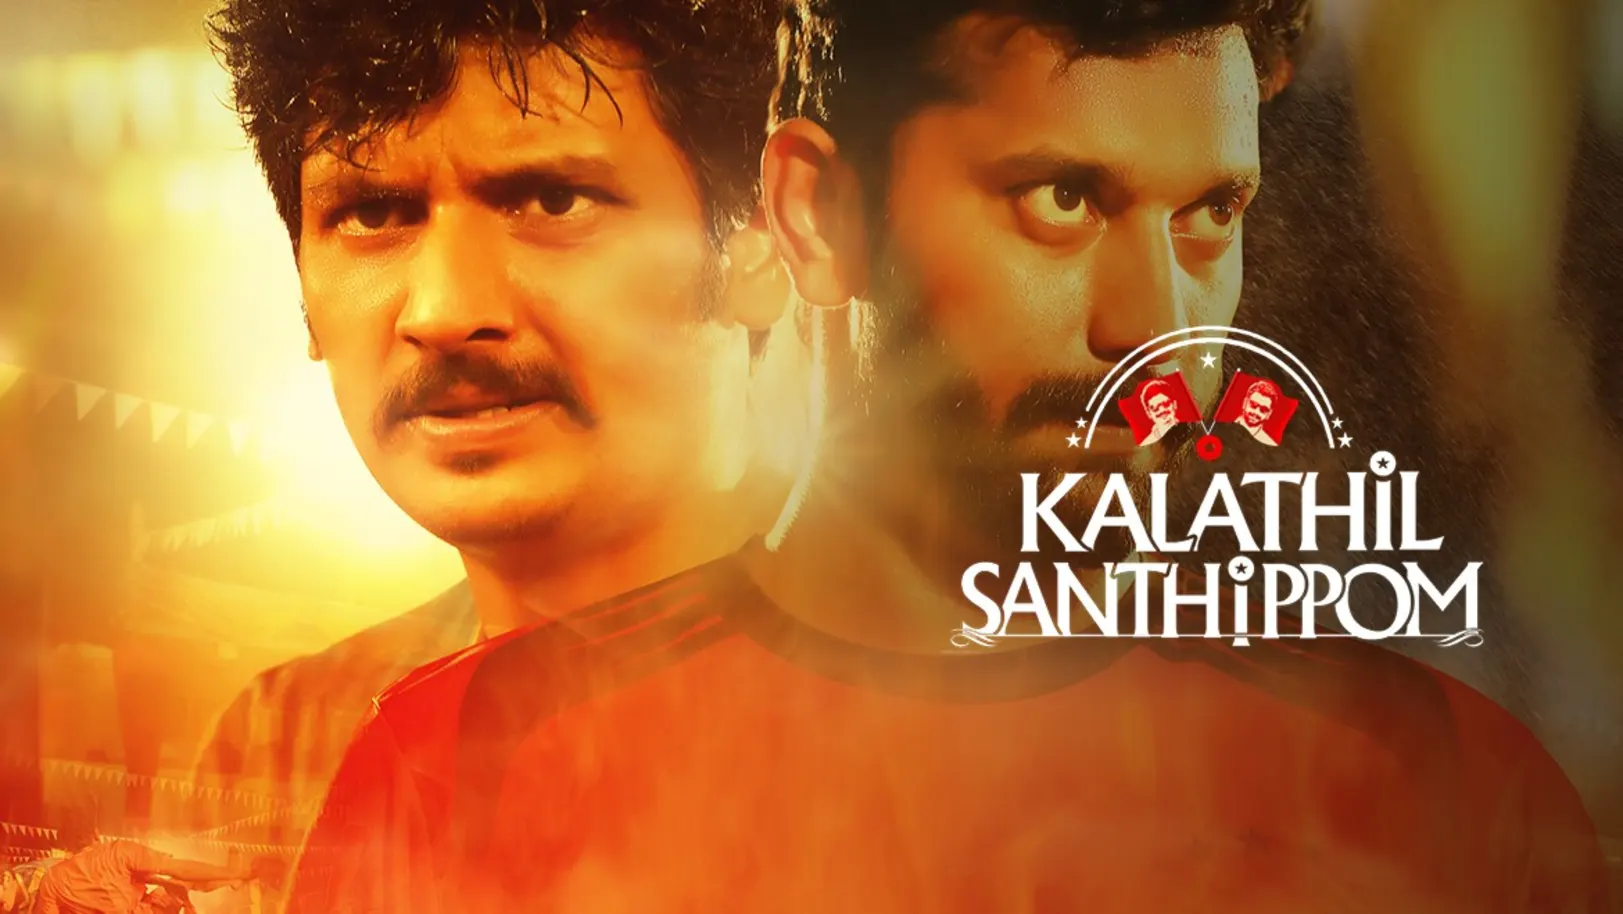 Kalathil Santhippom Movie